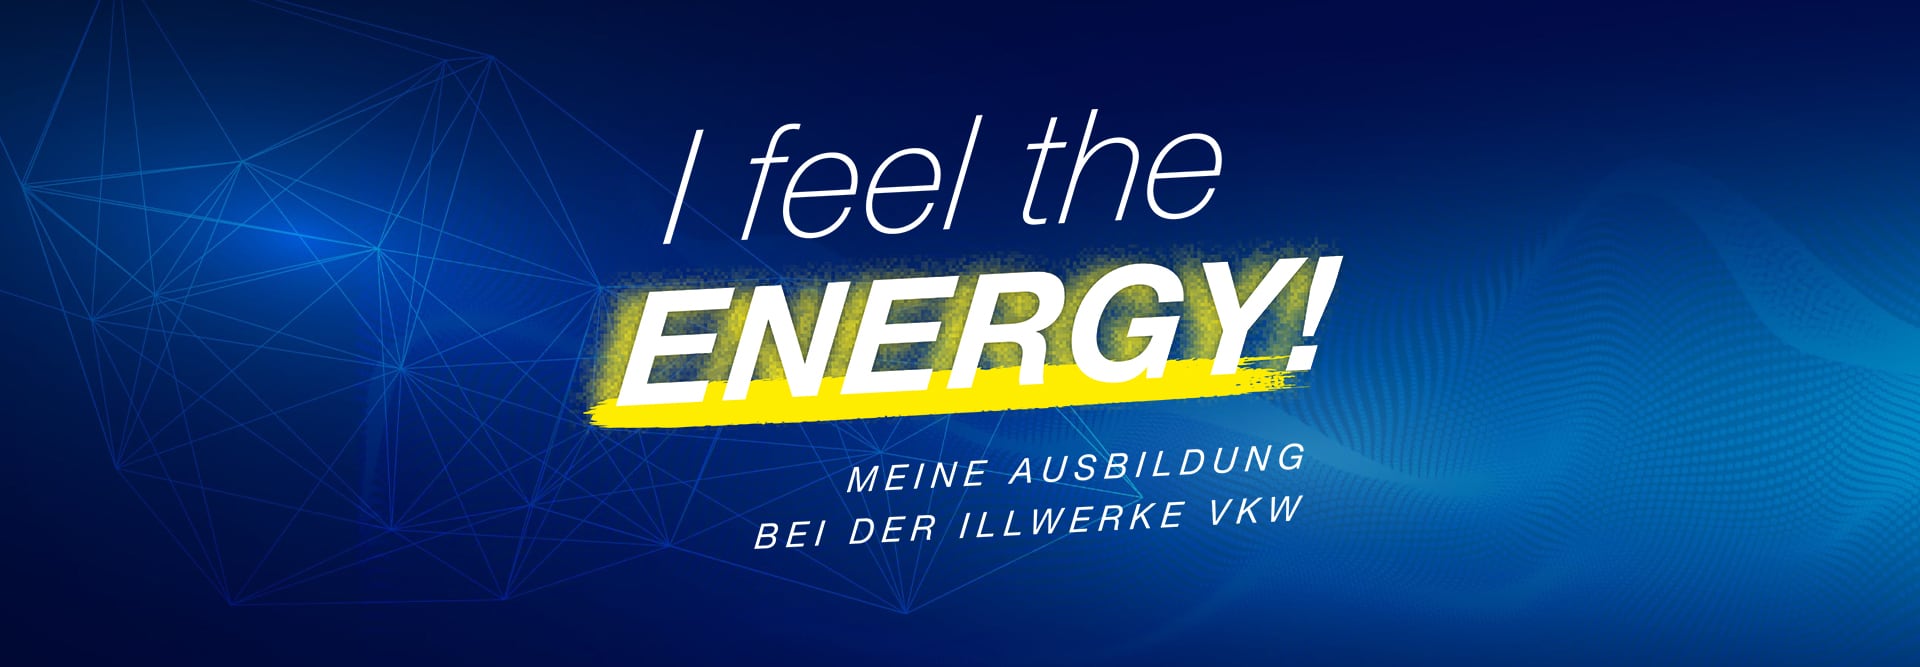 Kampagnen-Logo I feel the Energy – Meine Ausbildung bei der illwerke vkw